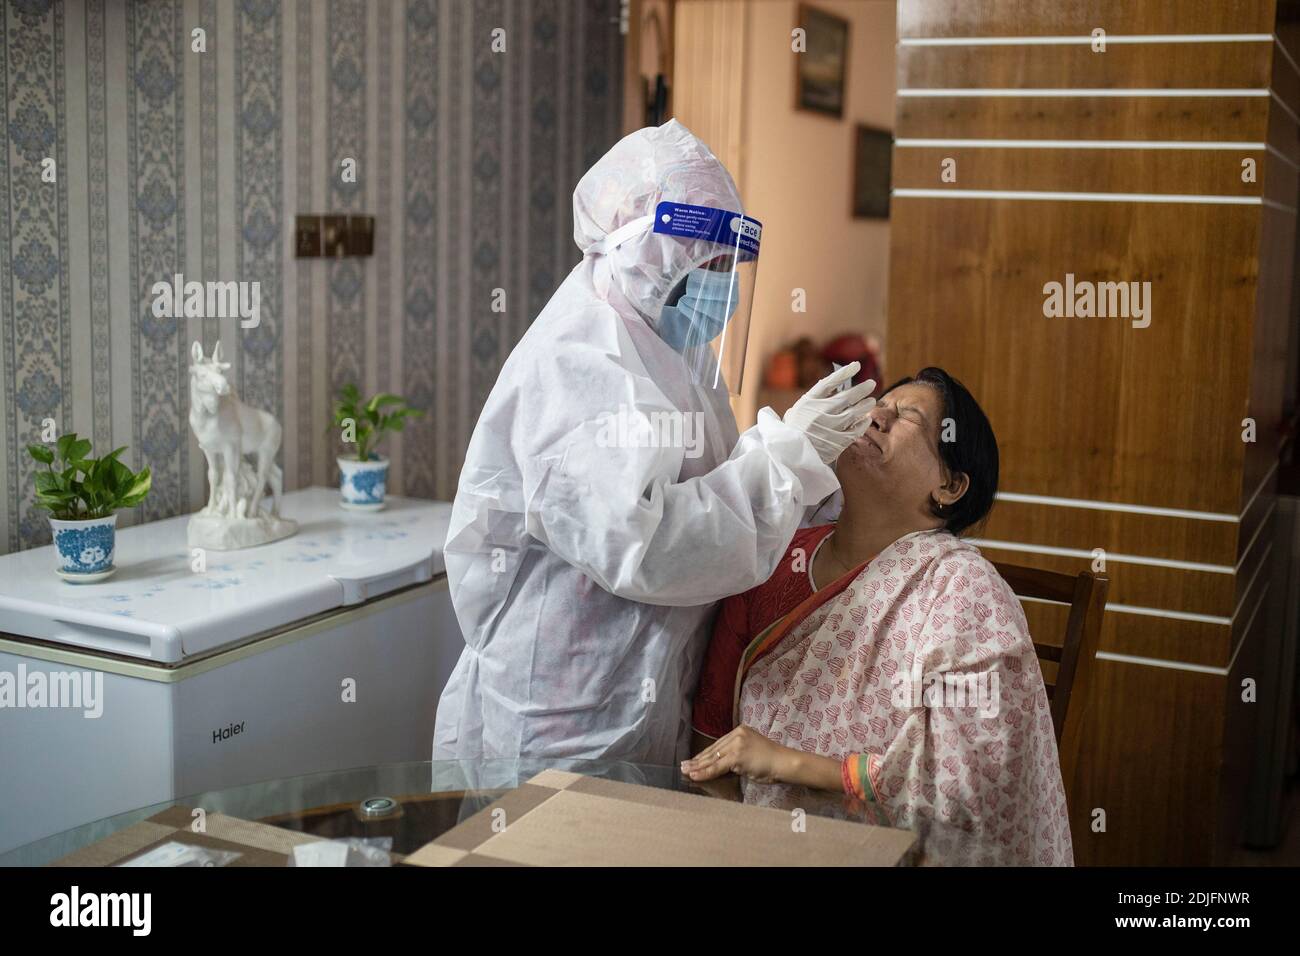 Un personnel médical recueillant un échantillon pour le test du coronavirus Covid-19 à domicile. Dhaka, Bangladesh Banque D'Images